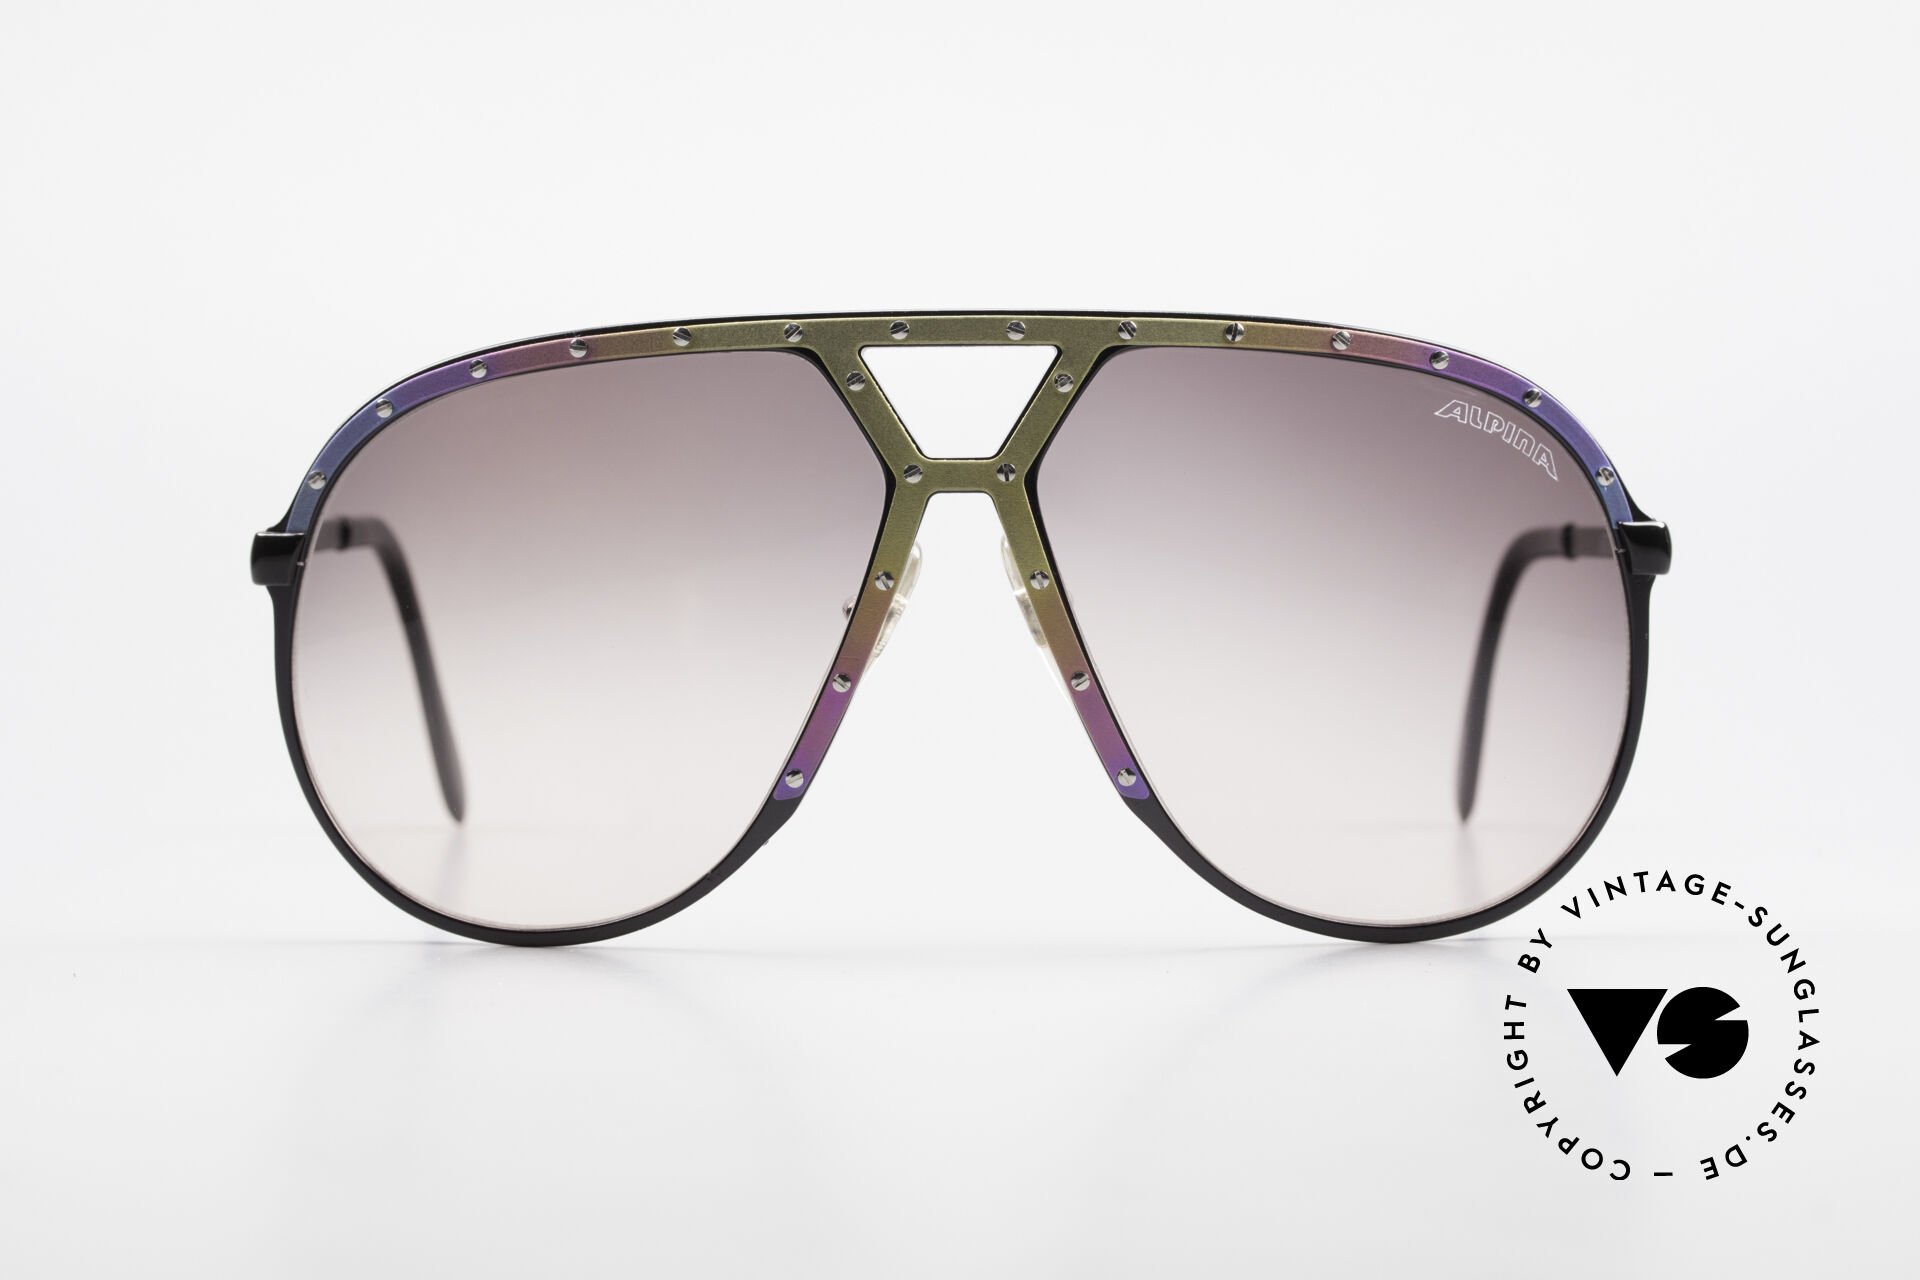 www.vintage-sunglasses-shop.com